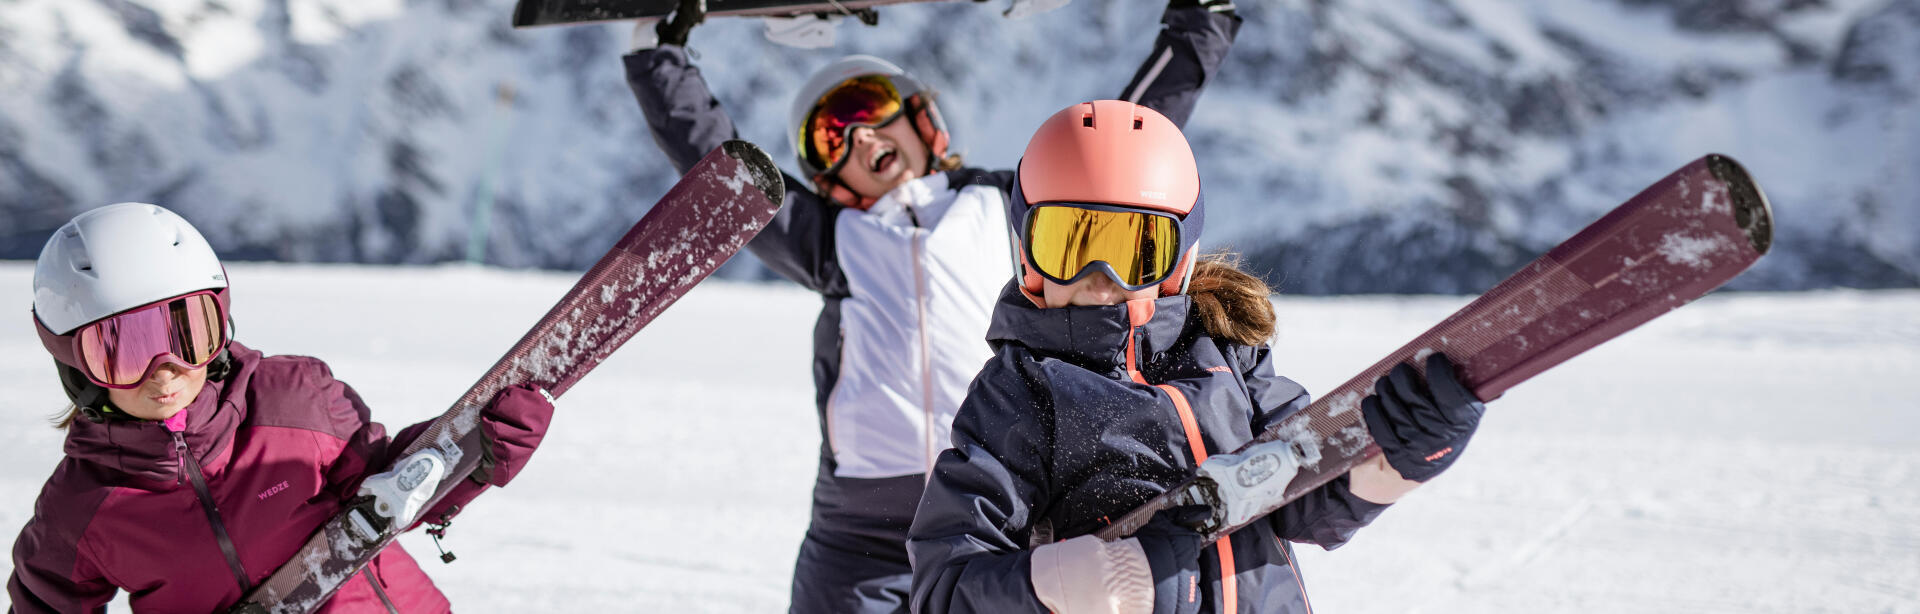 Como vestir as crianças de forma adequada para o ski?